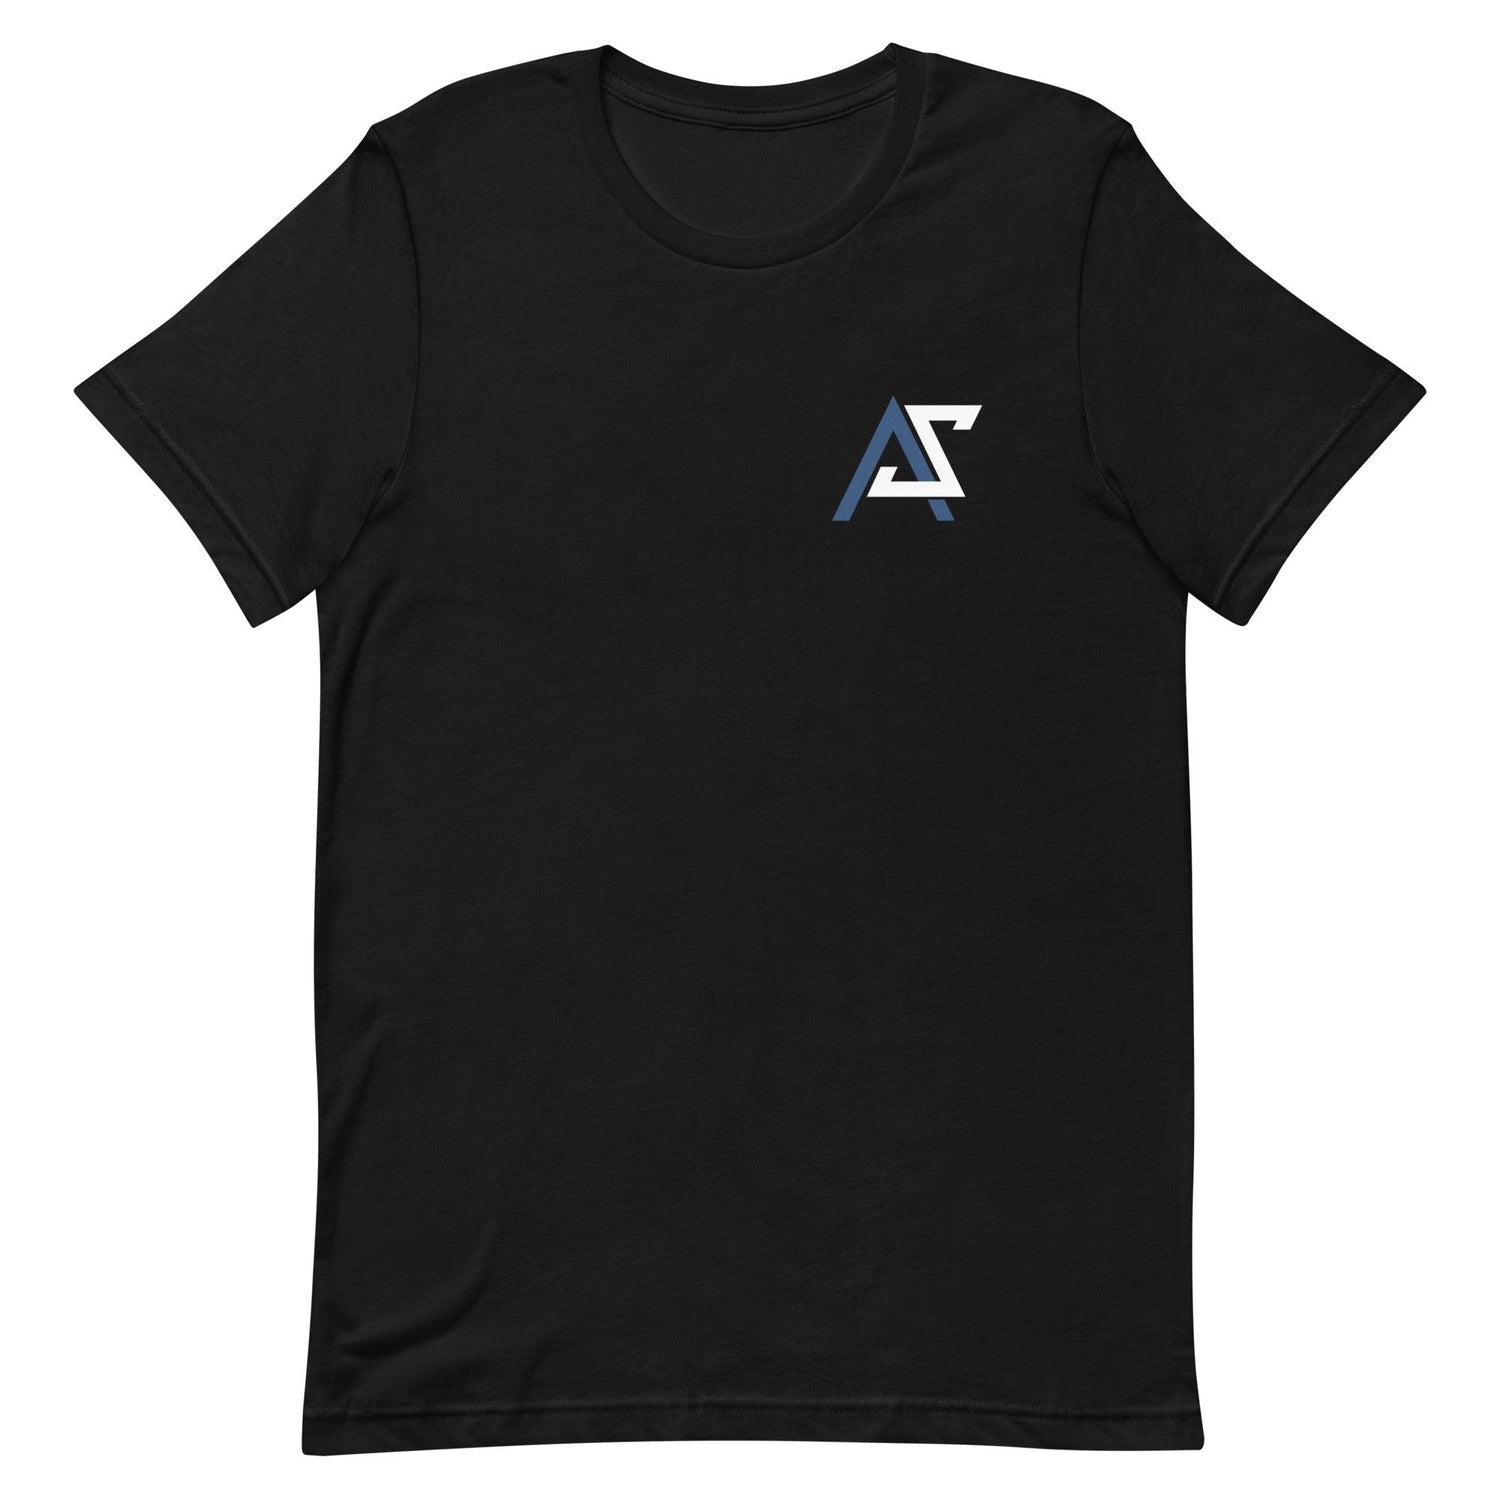 Adrianna Smith "Essential" t-shirt - Fan Arch